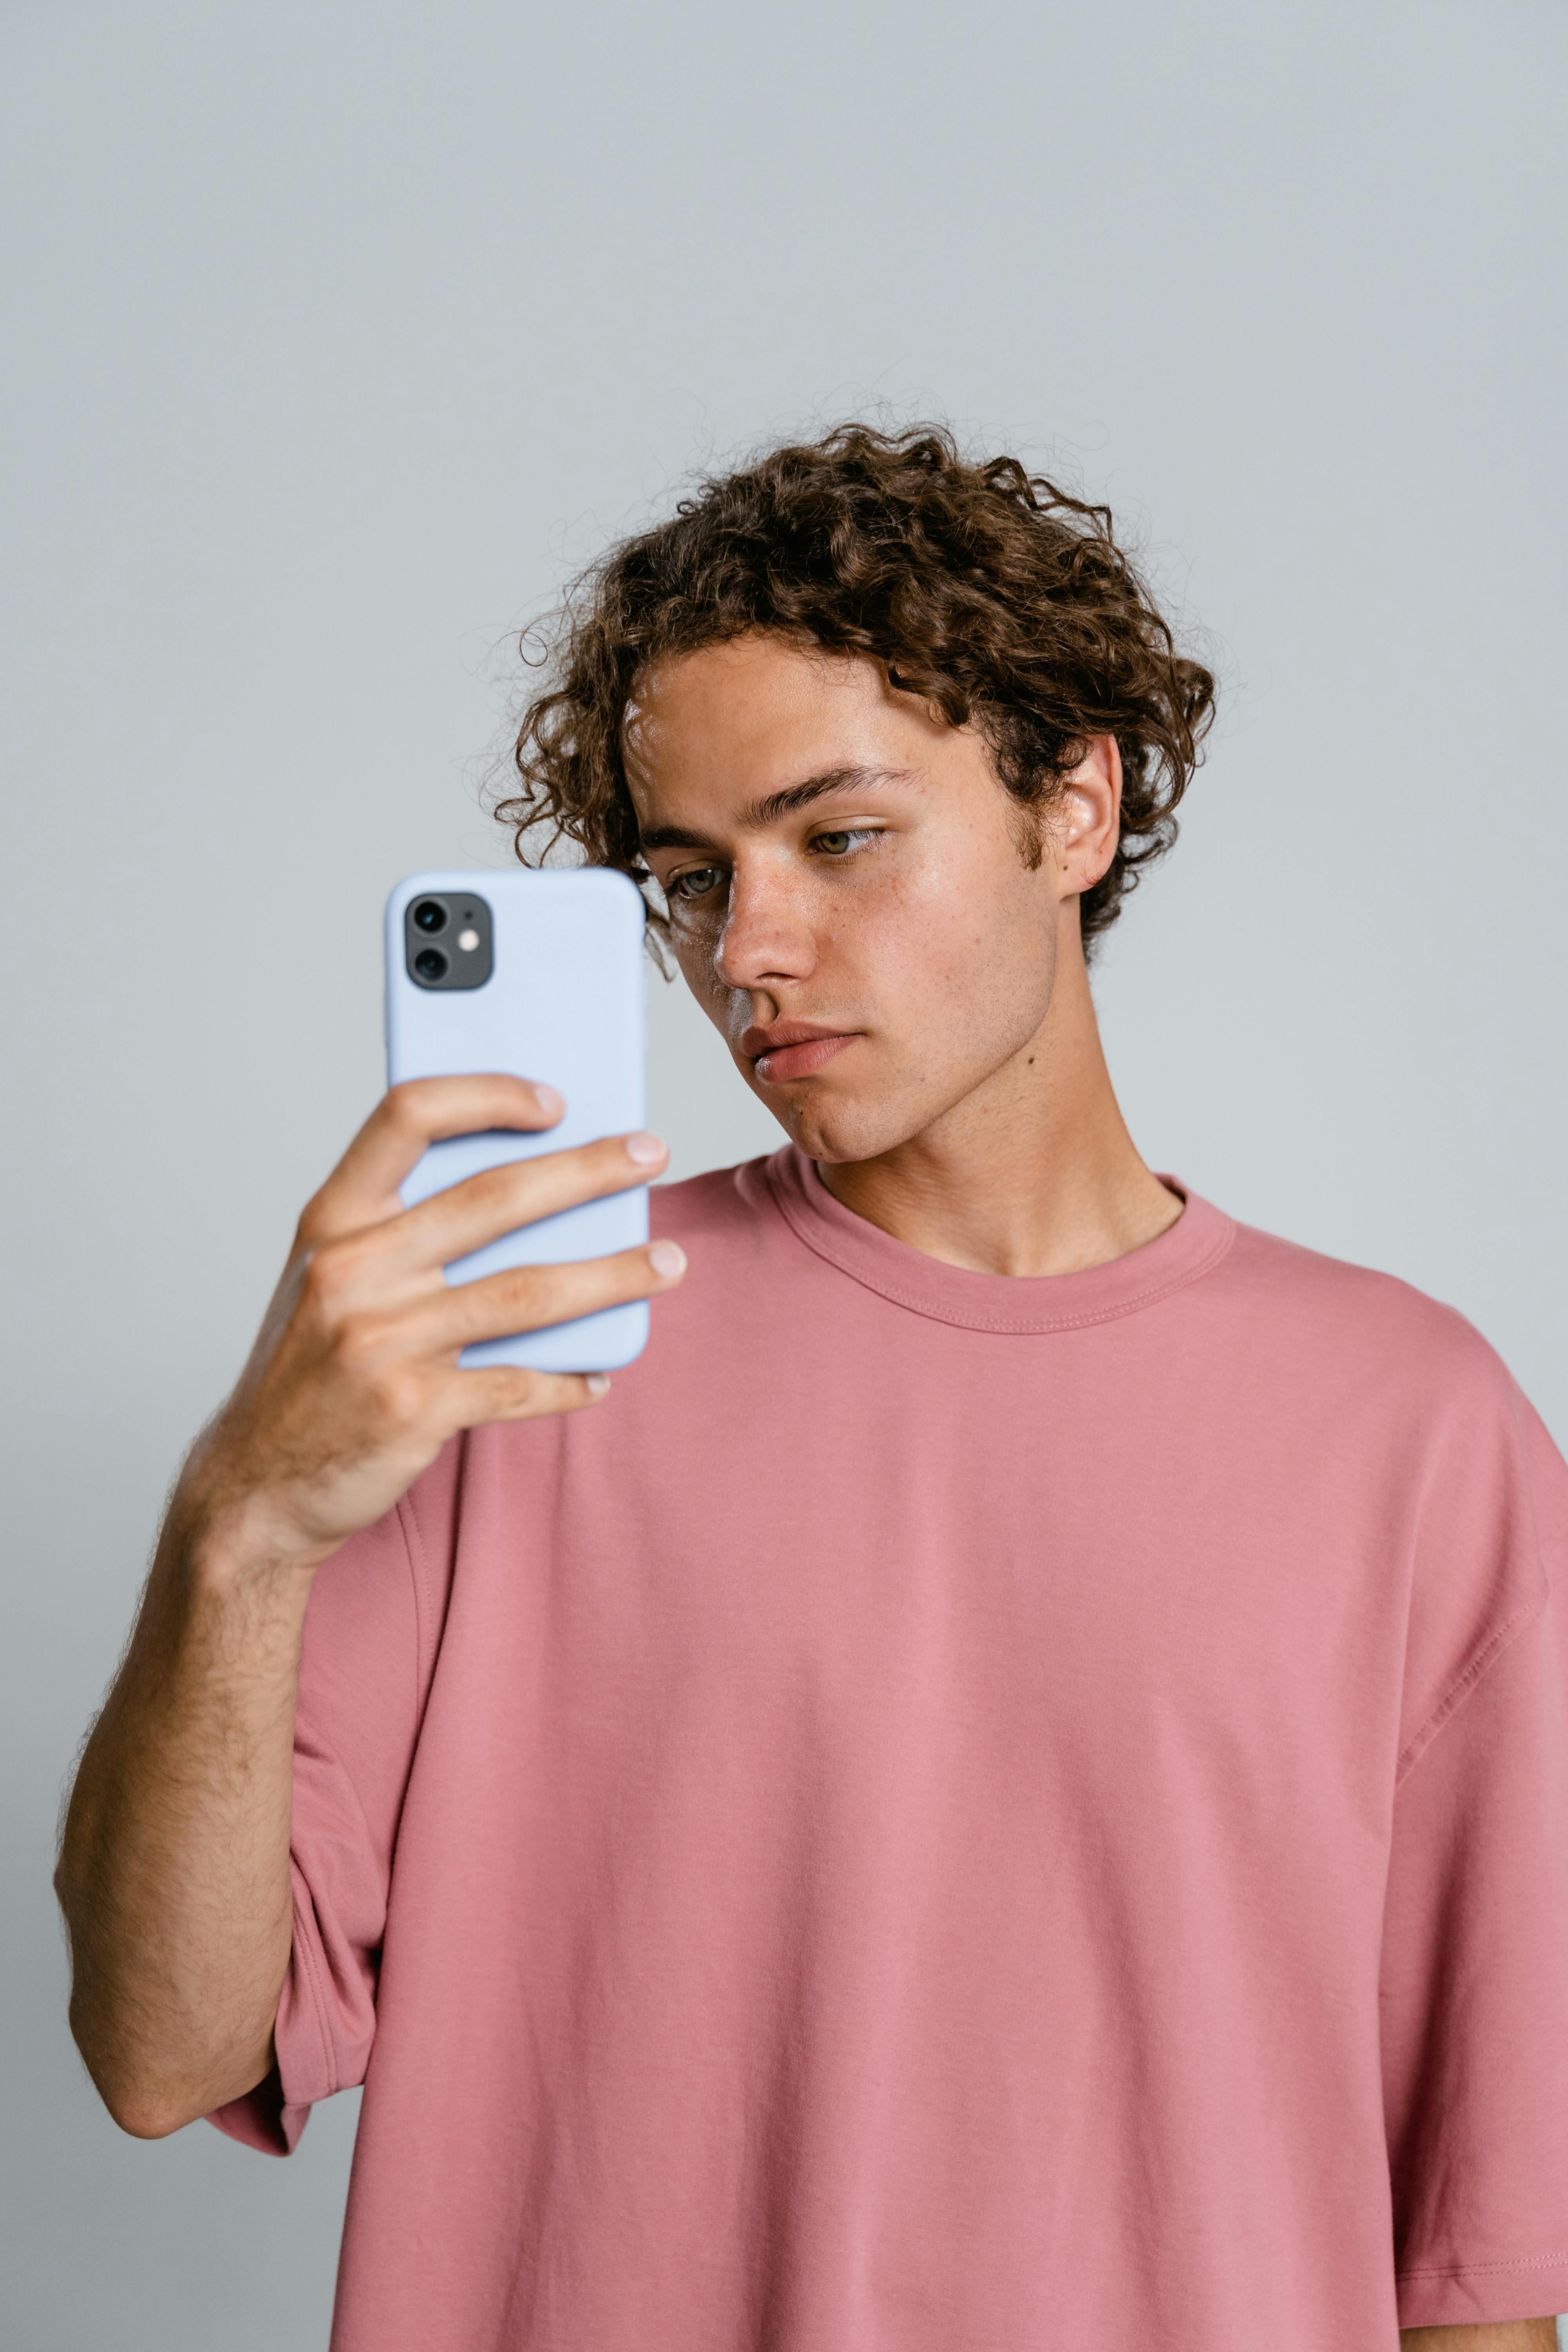 Ein Teenager an seinem Telefon | Quelle: Pexels